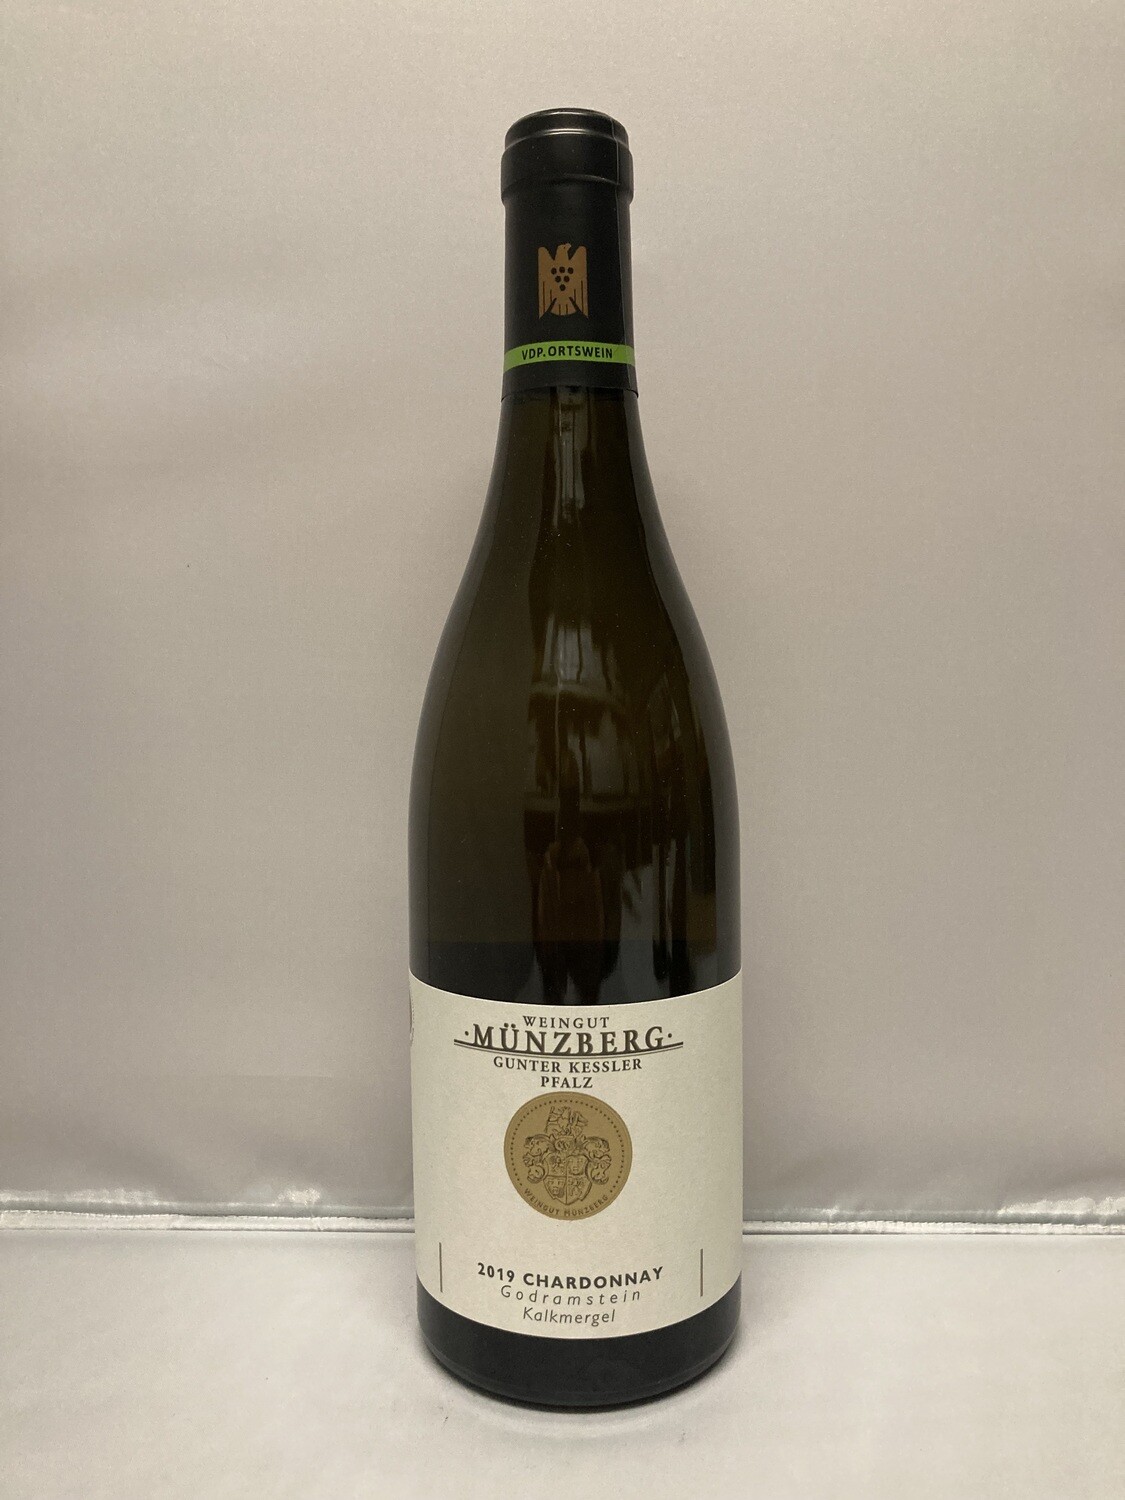 Chardonnay-2019 droog Kalkmergel Münzberg (Pfalz)